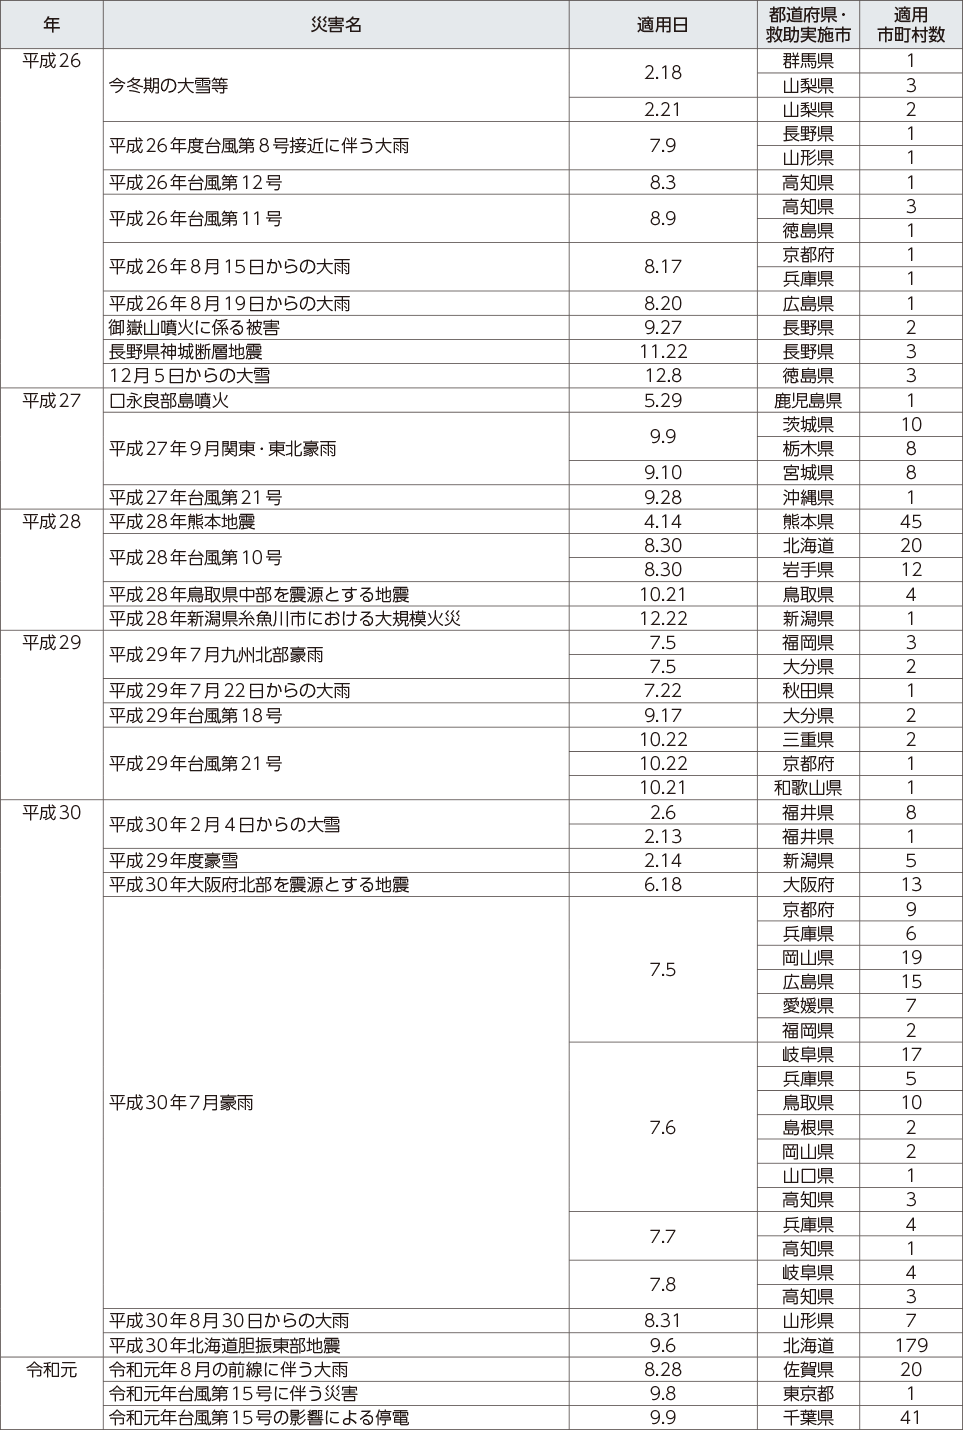 附属資料12　災害救助法の適用実績（阪神・淡路大震災以降）（4）